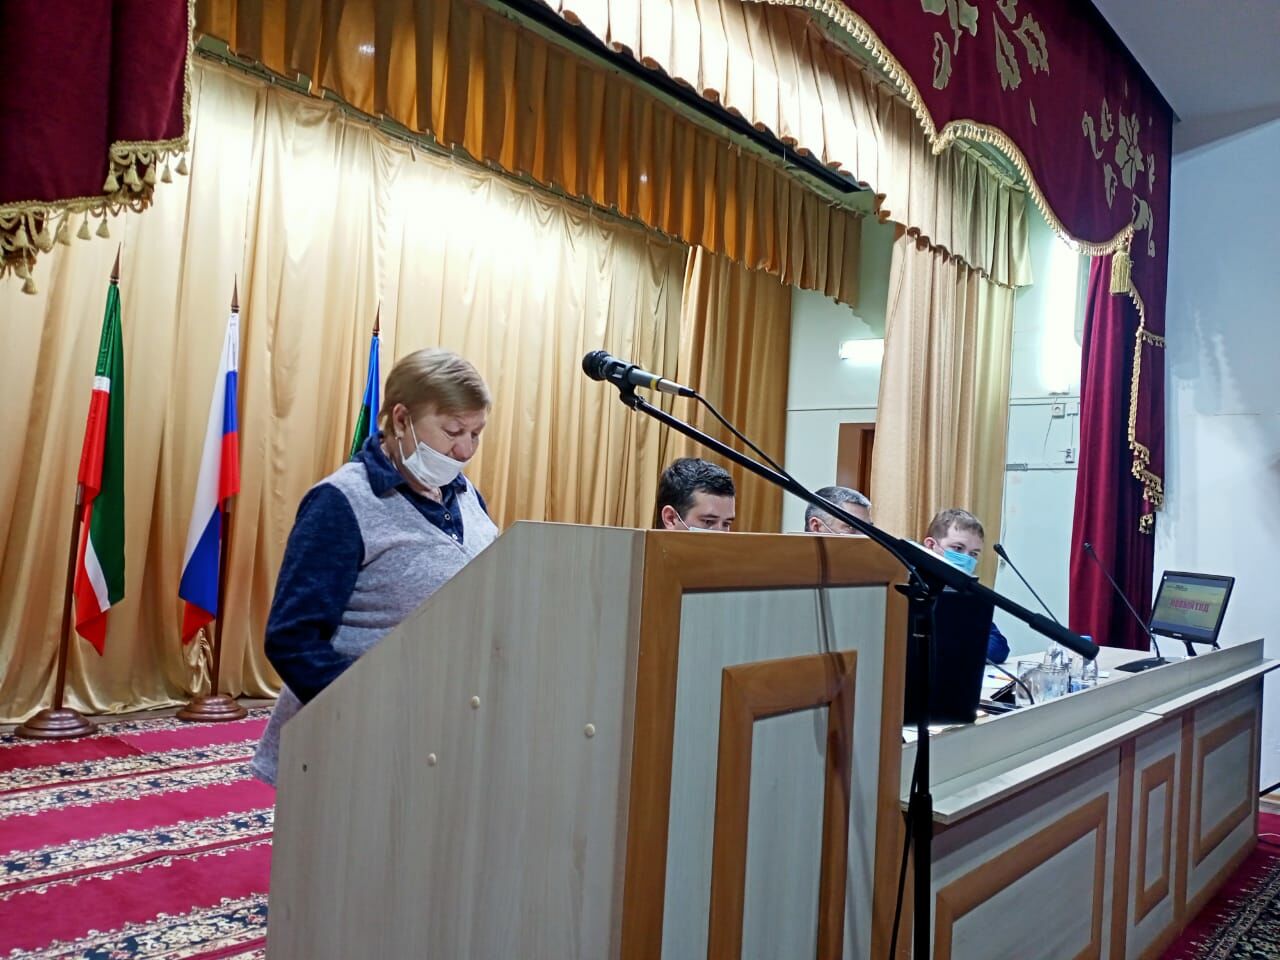 Итоги, планы и проблемные вопросы обсудили в Камском Устье